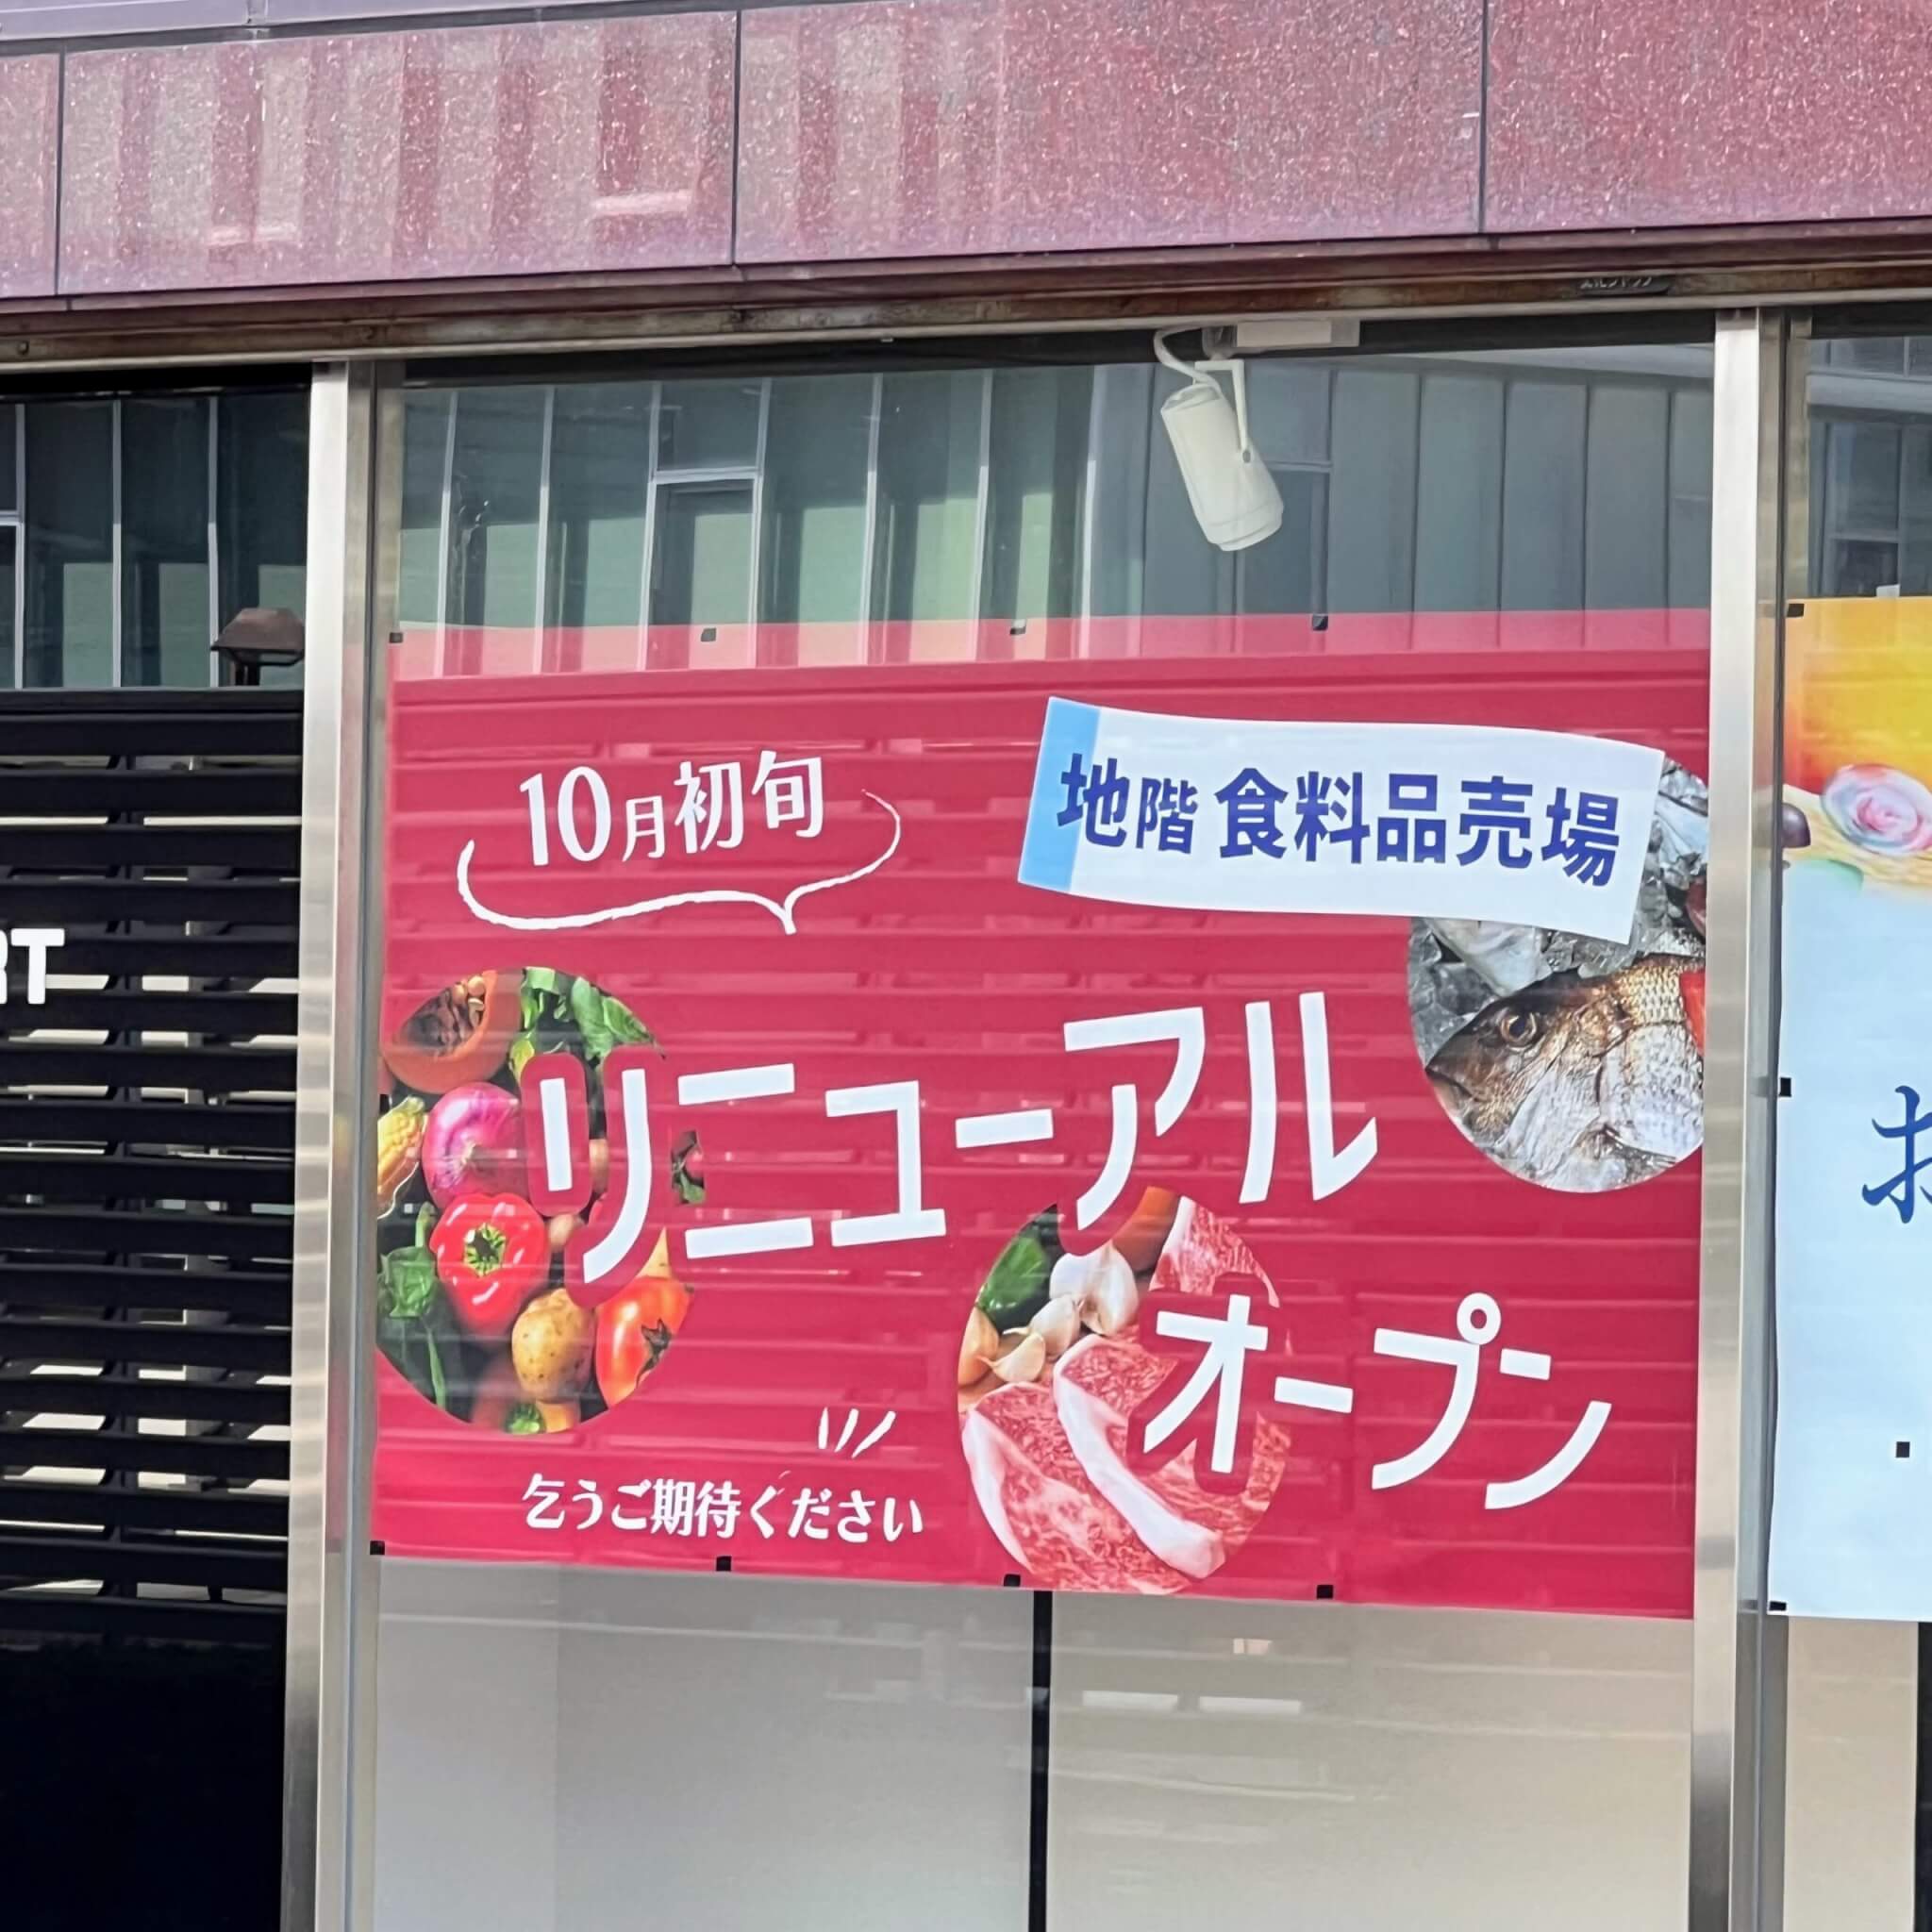 ヤマトヤシキ加古川店の10月初旬地階食料品売場リニューアルオープンのお知らせ